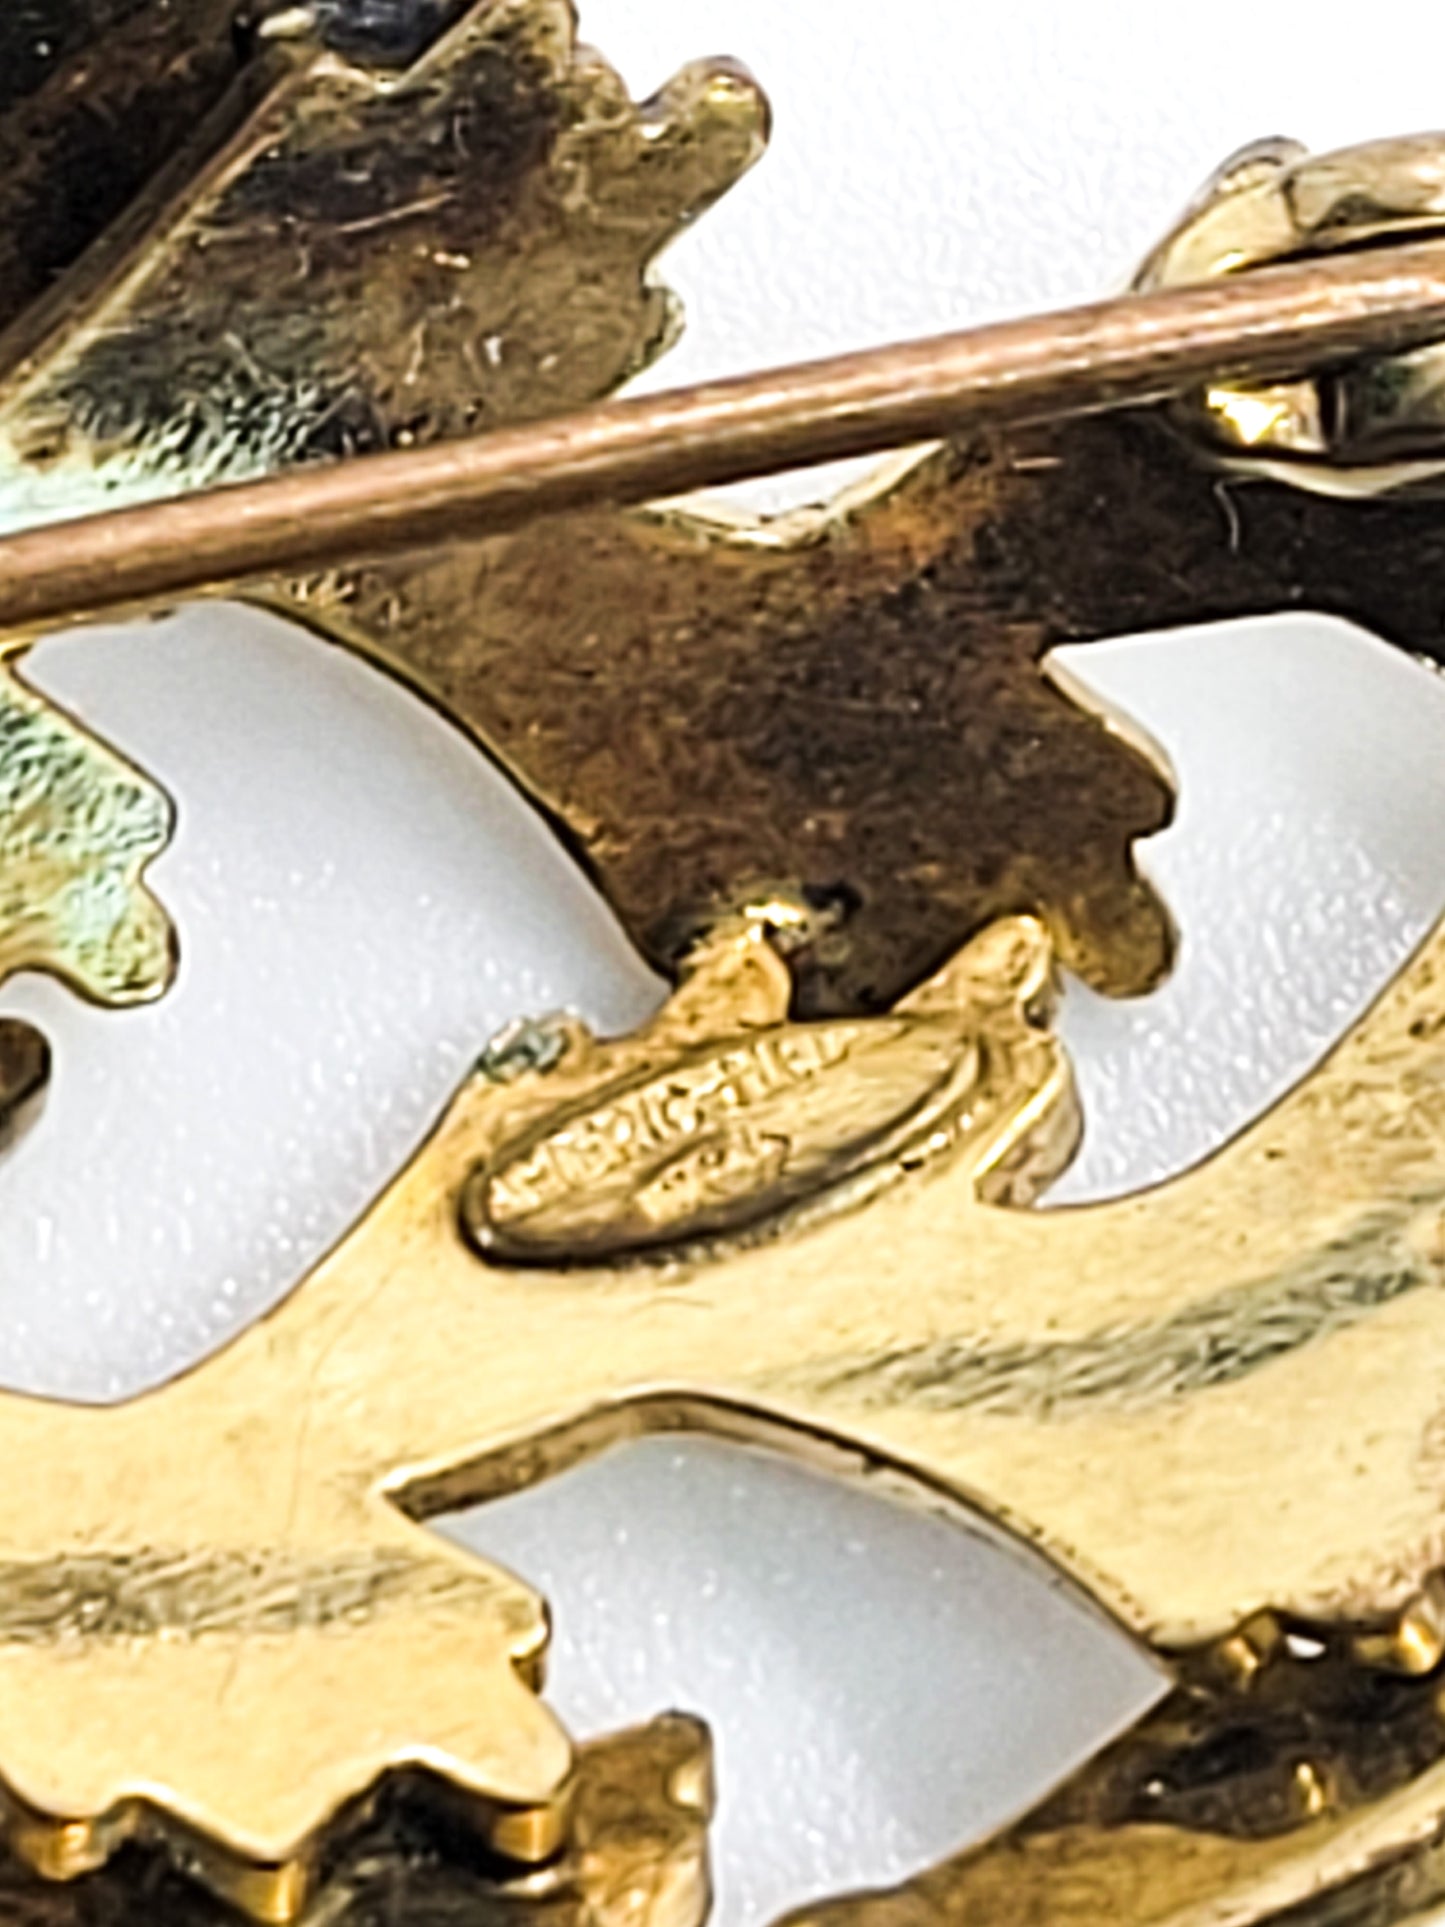 Kollmar and Jourdan modernist  signed vintage rolled gold scatter pendant brooch